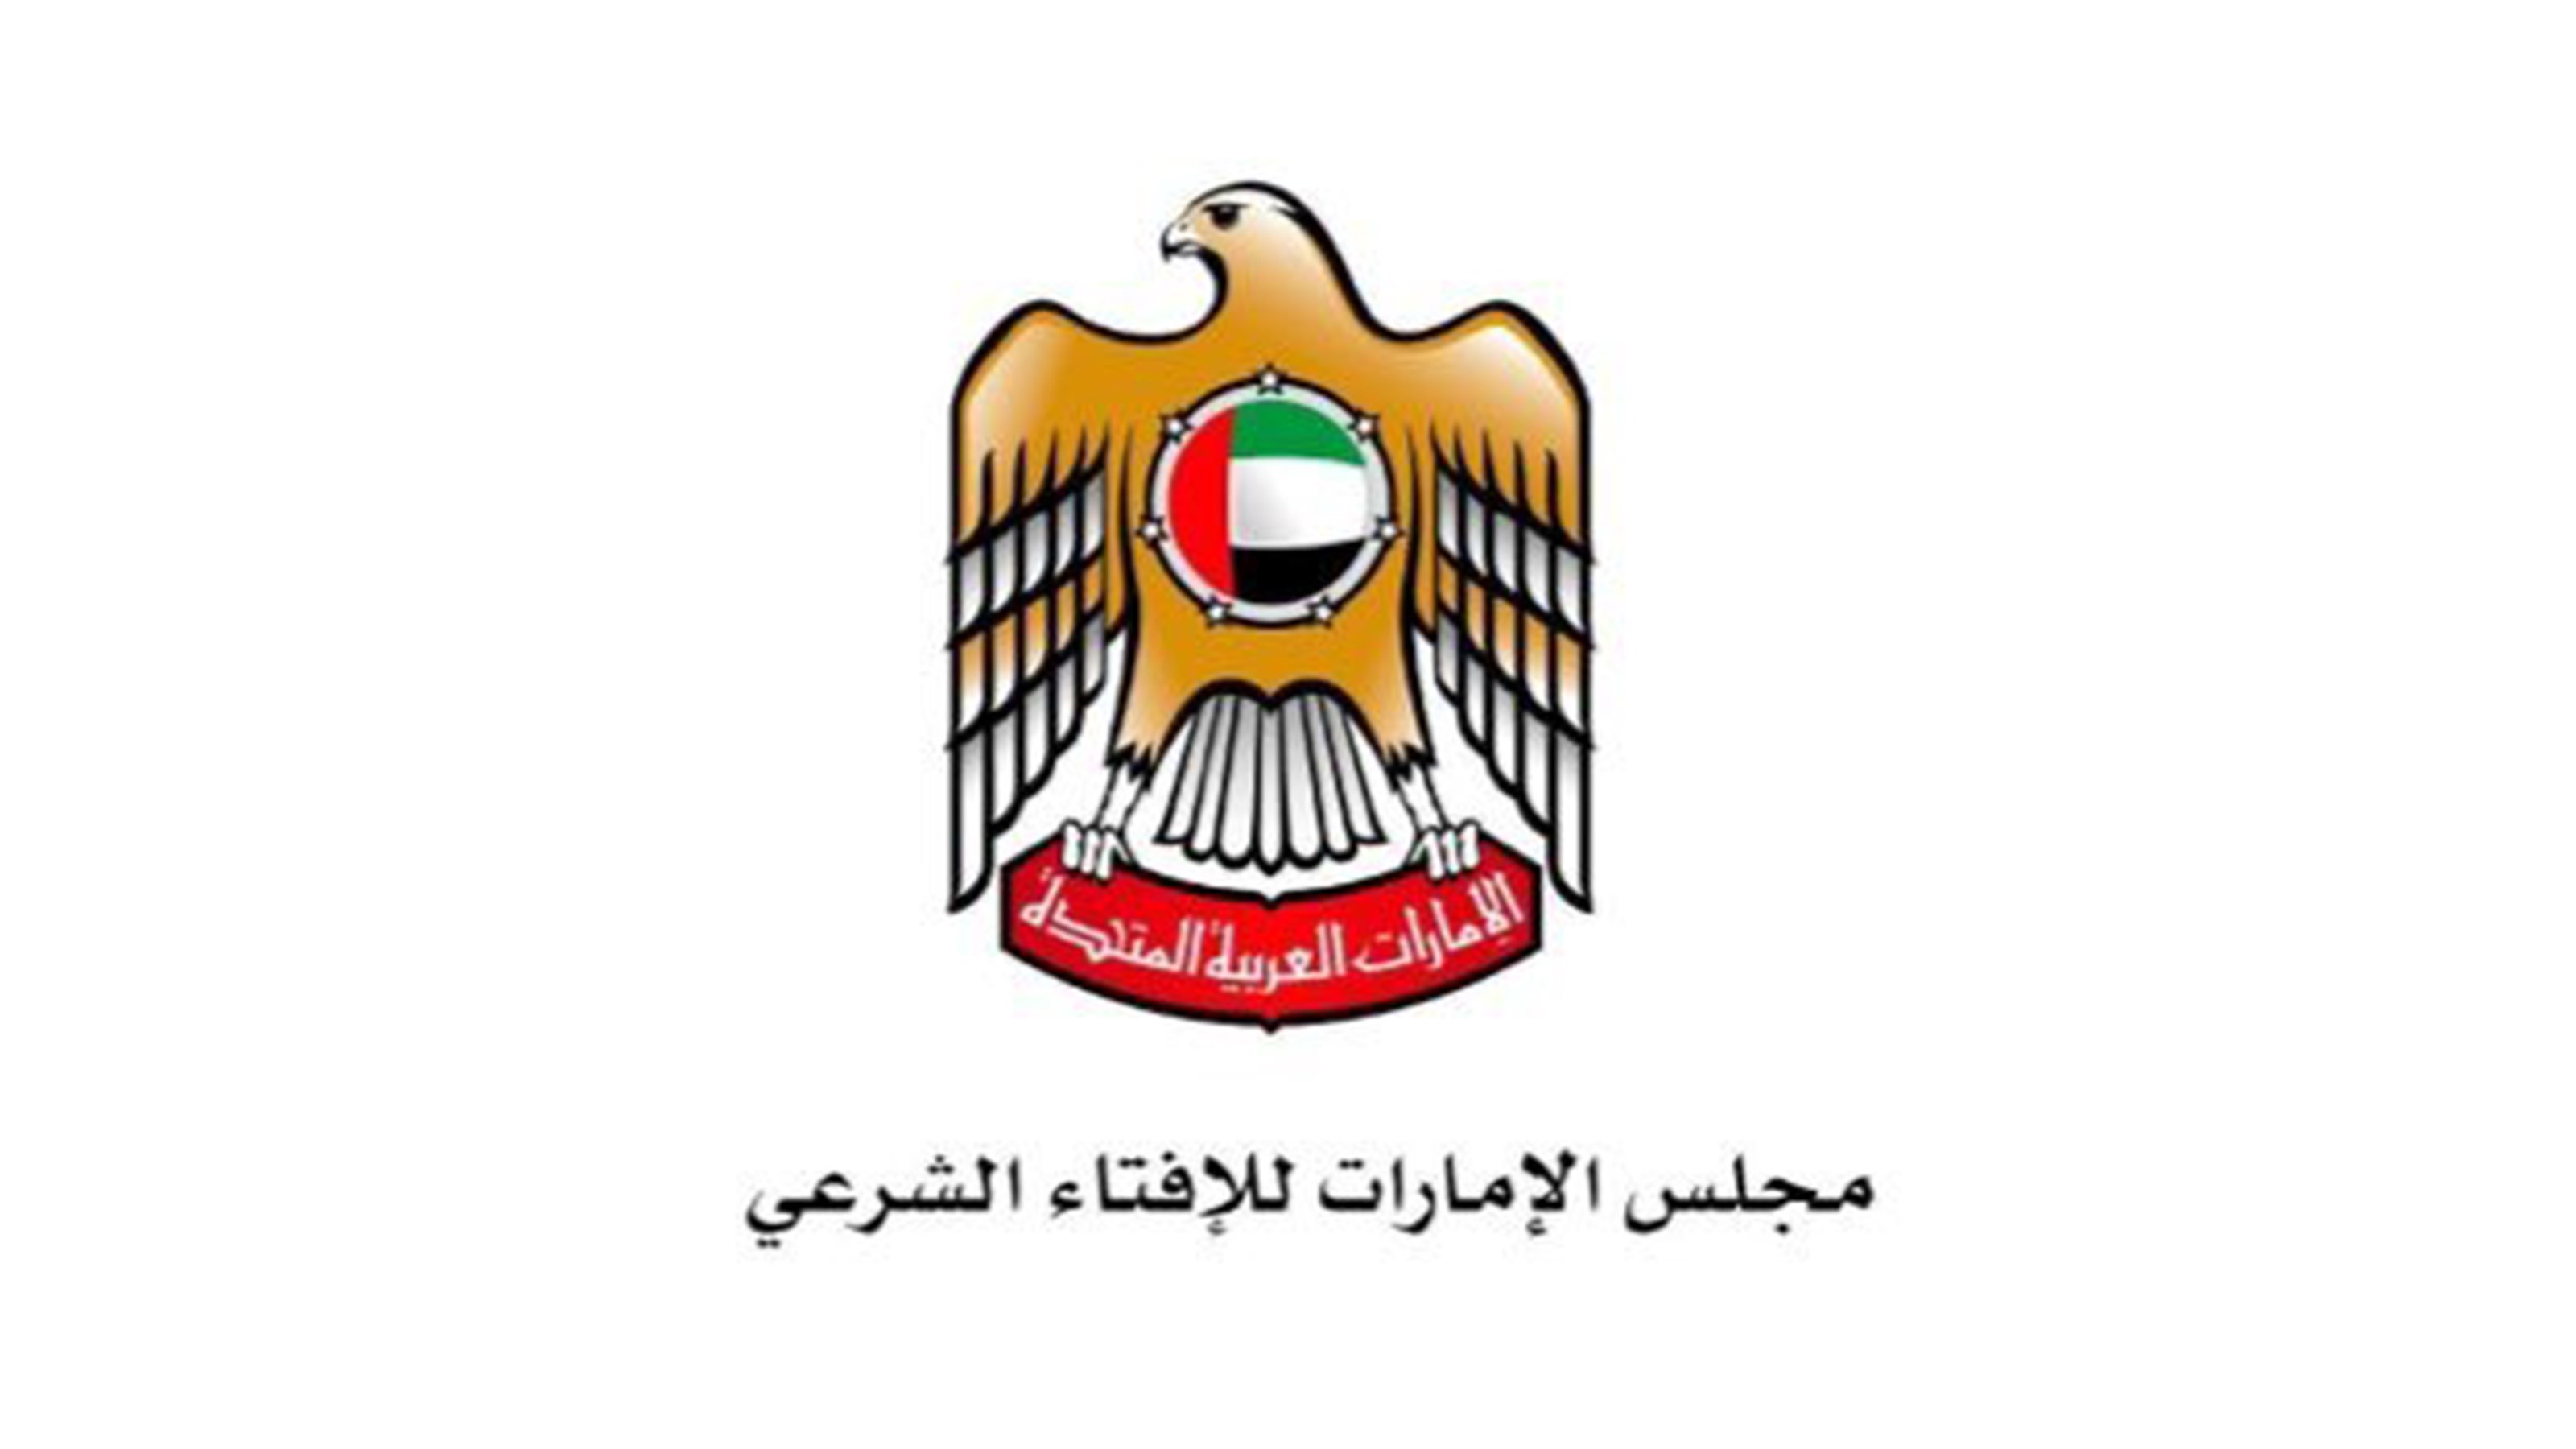 "الإمارات للإفتاء" يدعو أفراد المجتمع ومؤسساته إلى عدم الخوض في مسائل الفتوى الشرعية دون ترخيص